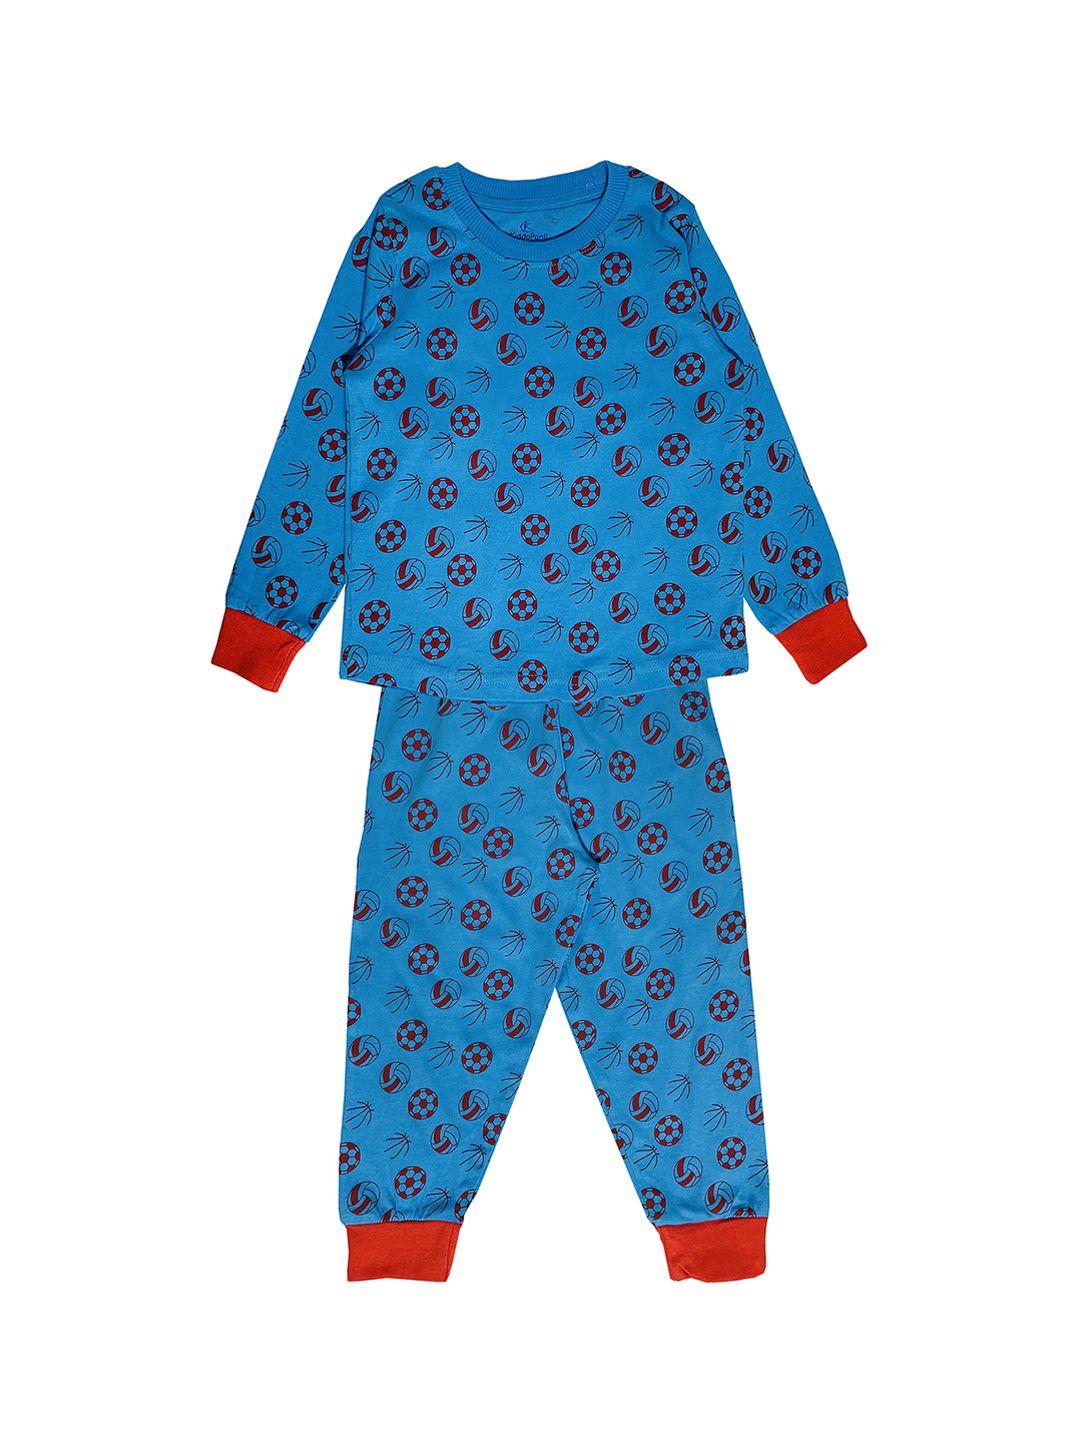 kiddopanti boys blue printed night suit